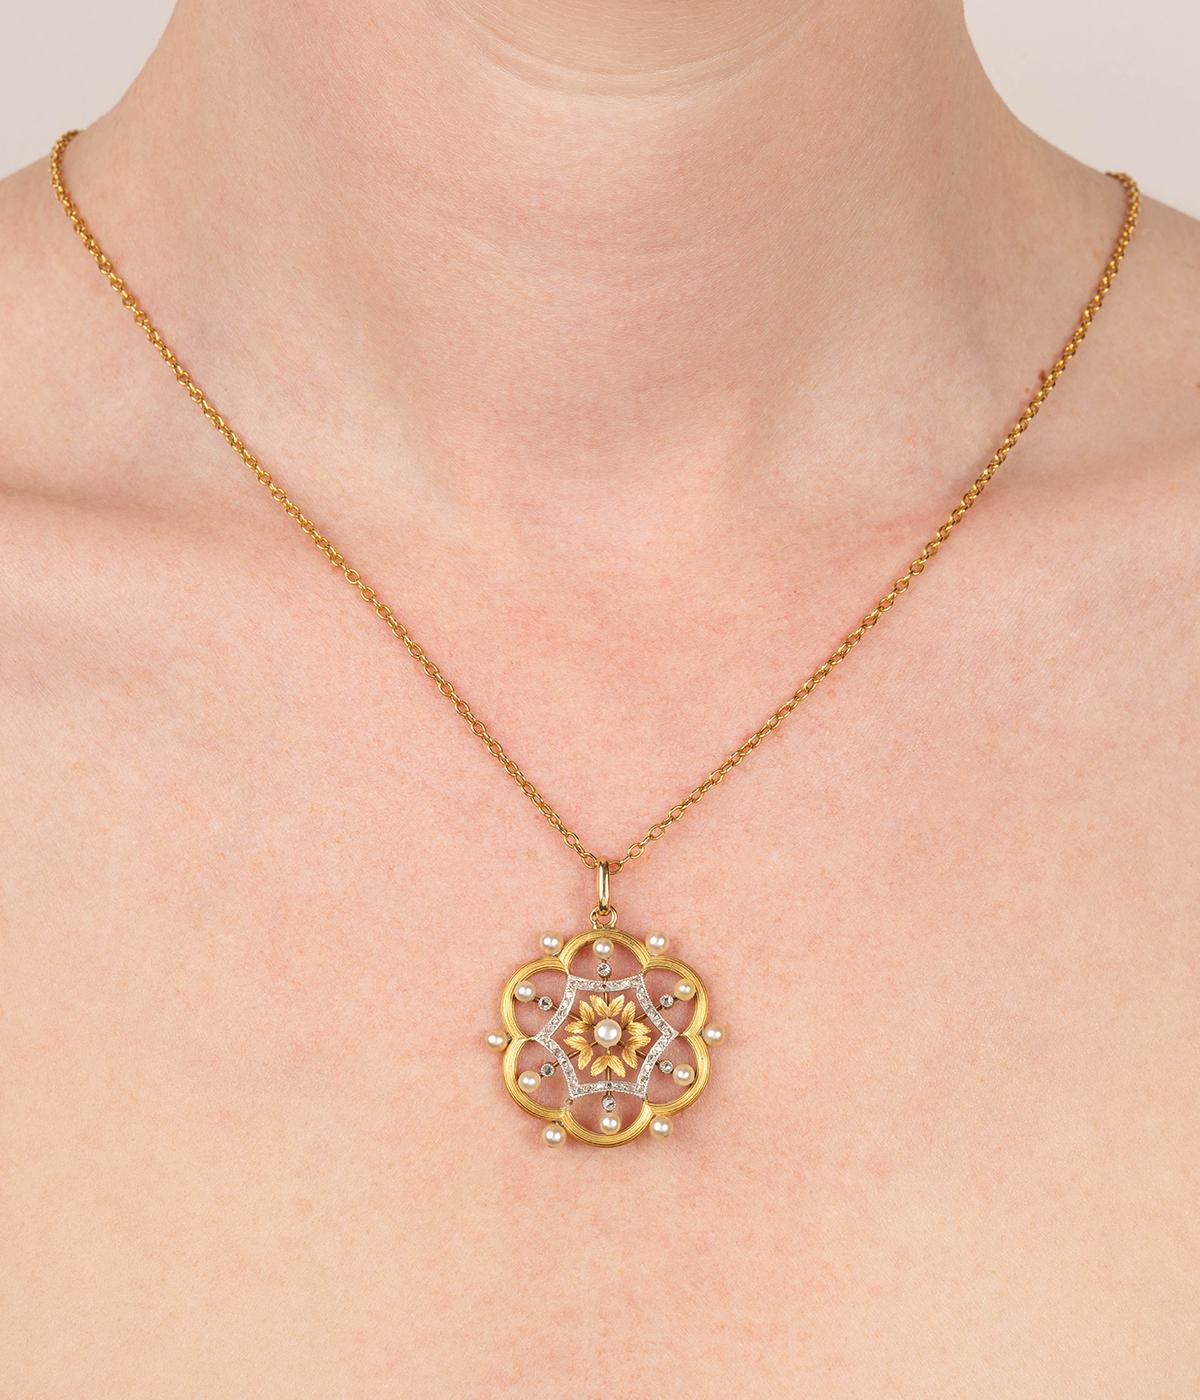 Délicat pendentif ancien en or 18 carats (750 millièmes) deux tons du début du 20ème siècle, formant une rosace ajourée et ornée de petites perles et de diamants taille rose.